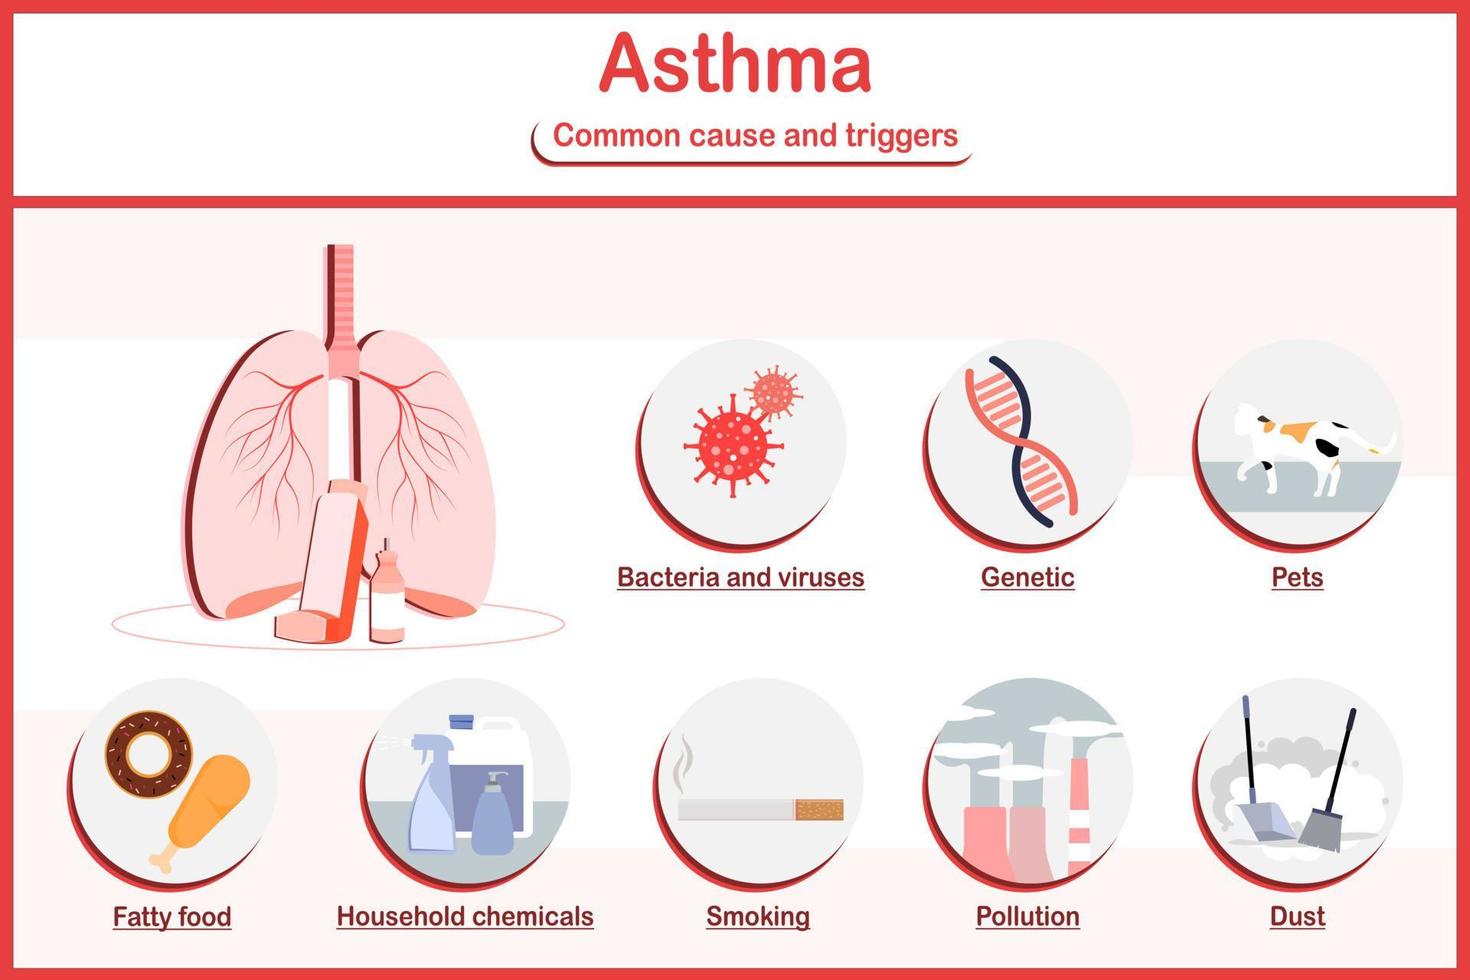 vetor ilustrações infográfico, sintomas do asma.fadiga,chiado no peito,tosse,peito dor, comum frio, falta de ar e difícil dormindo e a a maioria comum causas do asma.flat estilo.